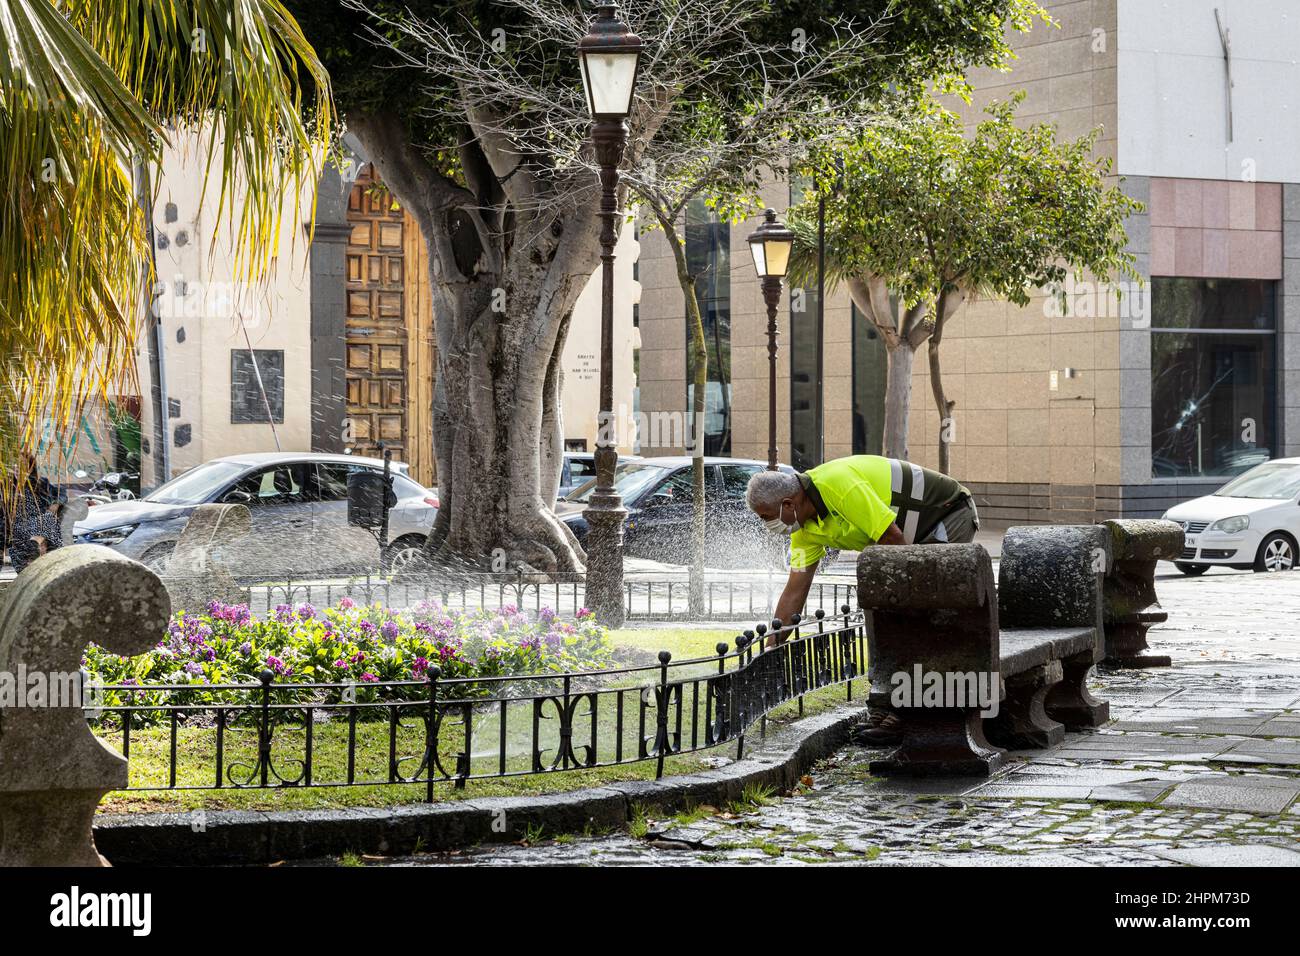 Jardinier en hiviz arrosant les plantes de la Plaza de Adelantado dans le site du patrimoine mondial de San Cristobal de la Laguna, Tenerife, île des Canaries Banque D'Images